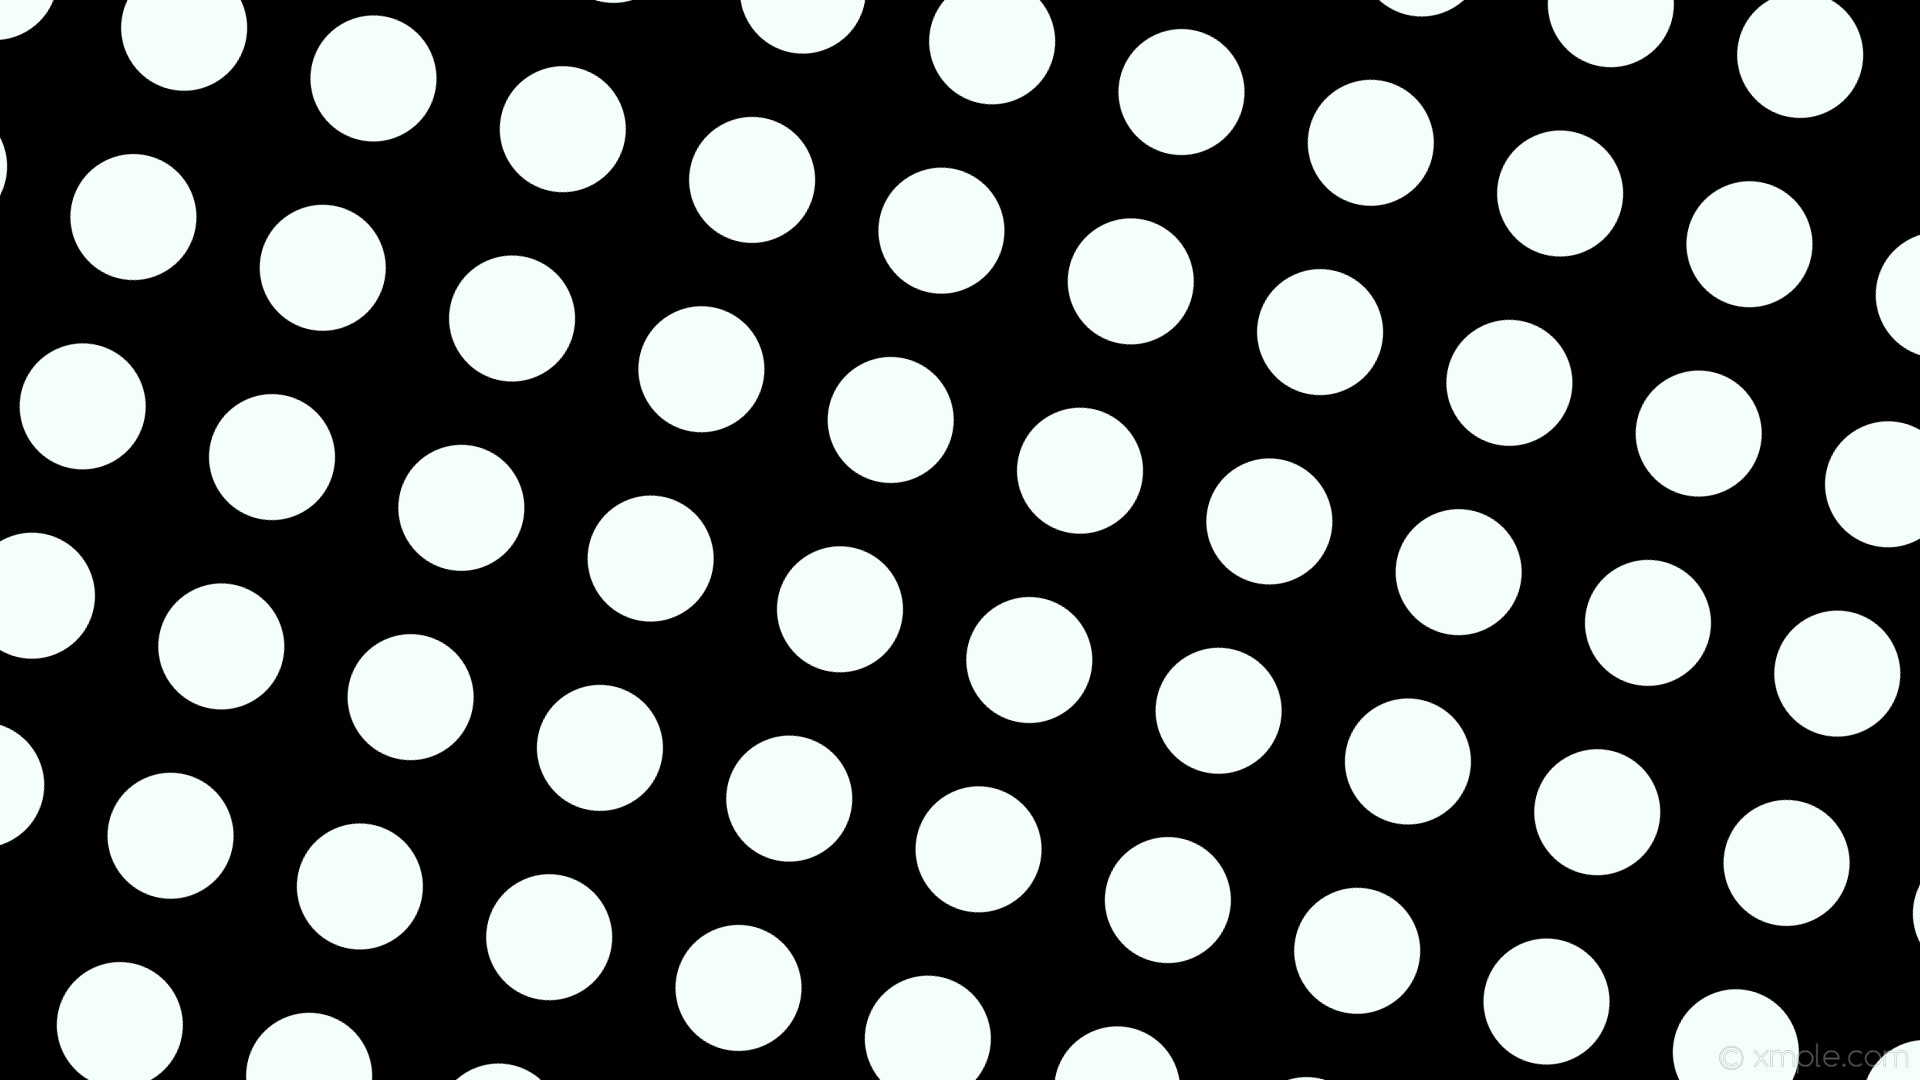 1920x1080 wallpaper white black spots polka dots mint cream #000000 #f5fffa 345Â°  126px 196px